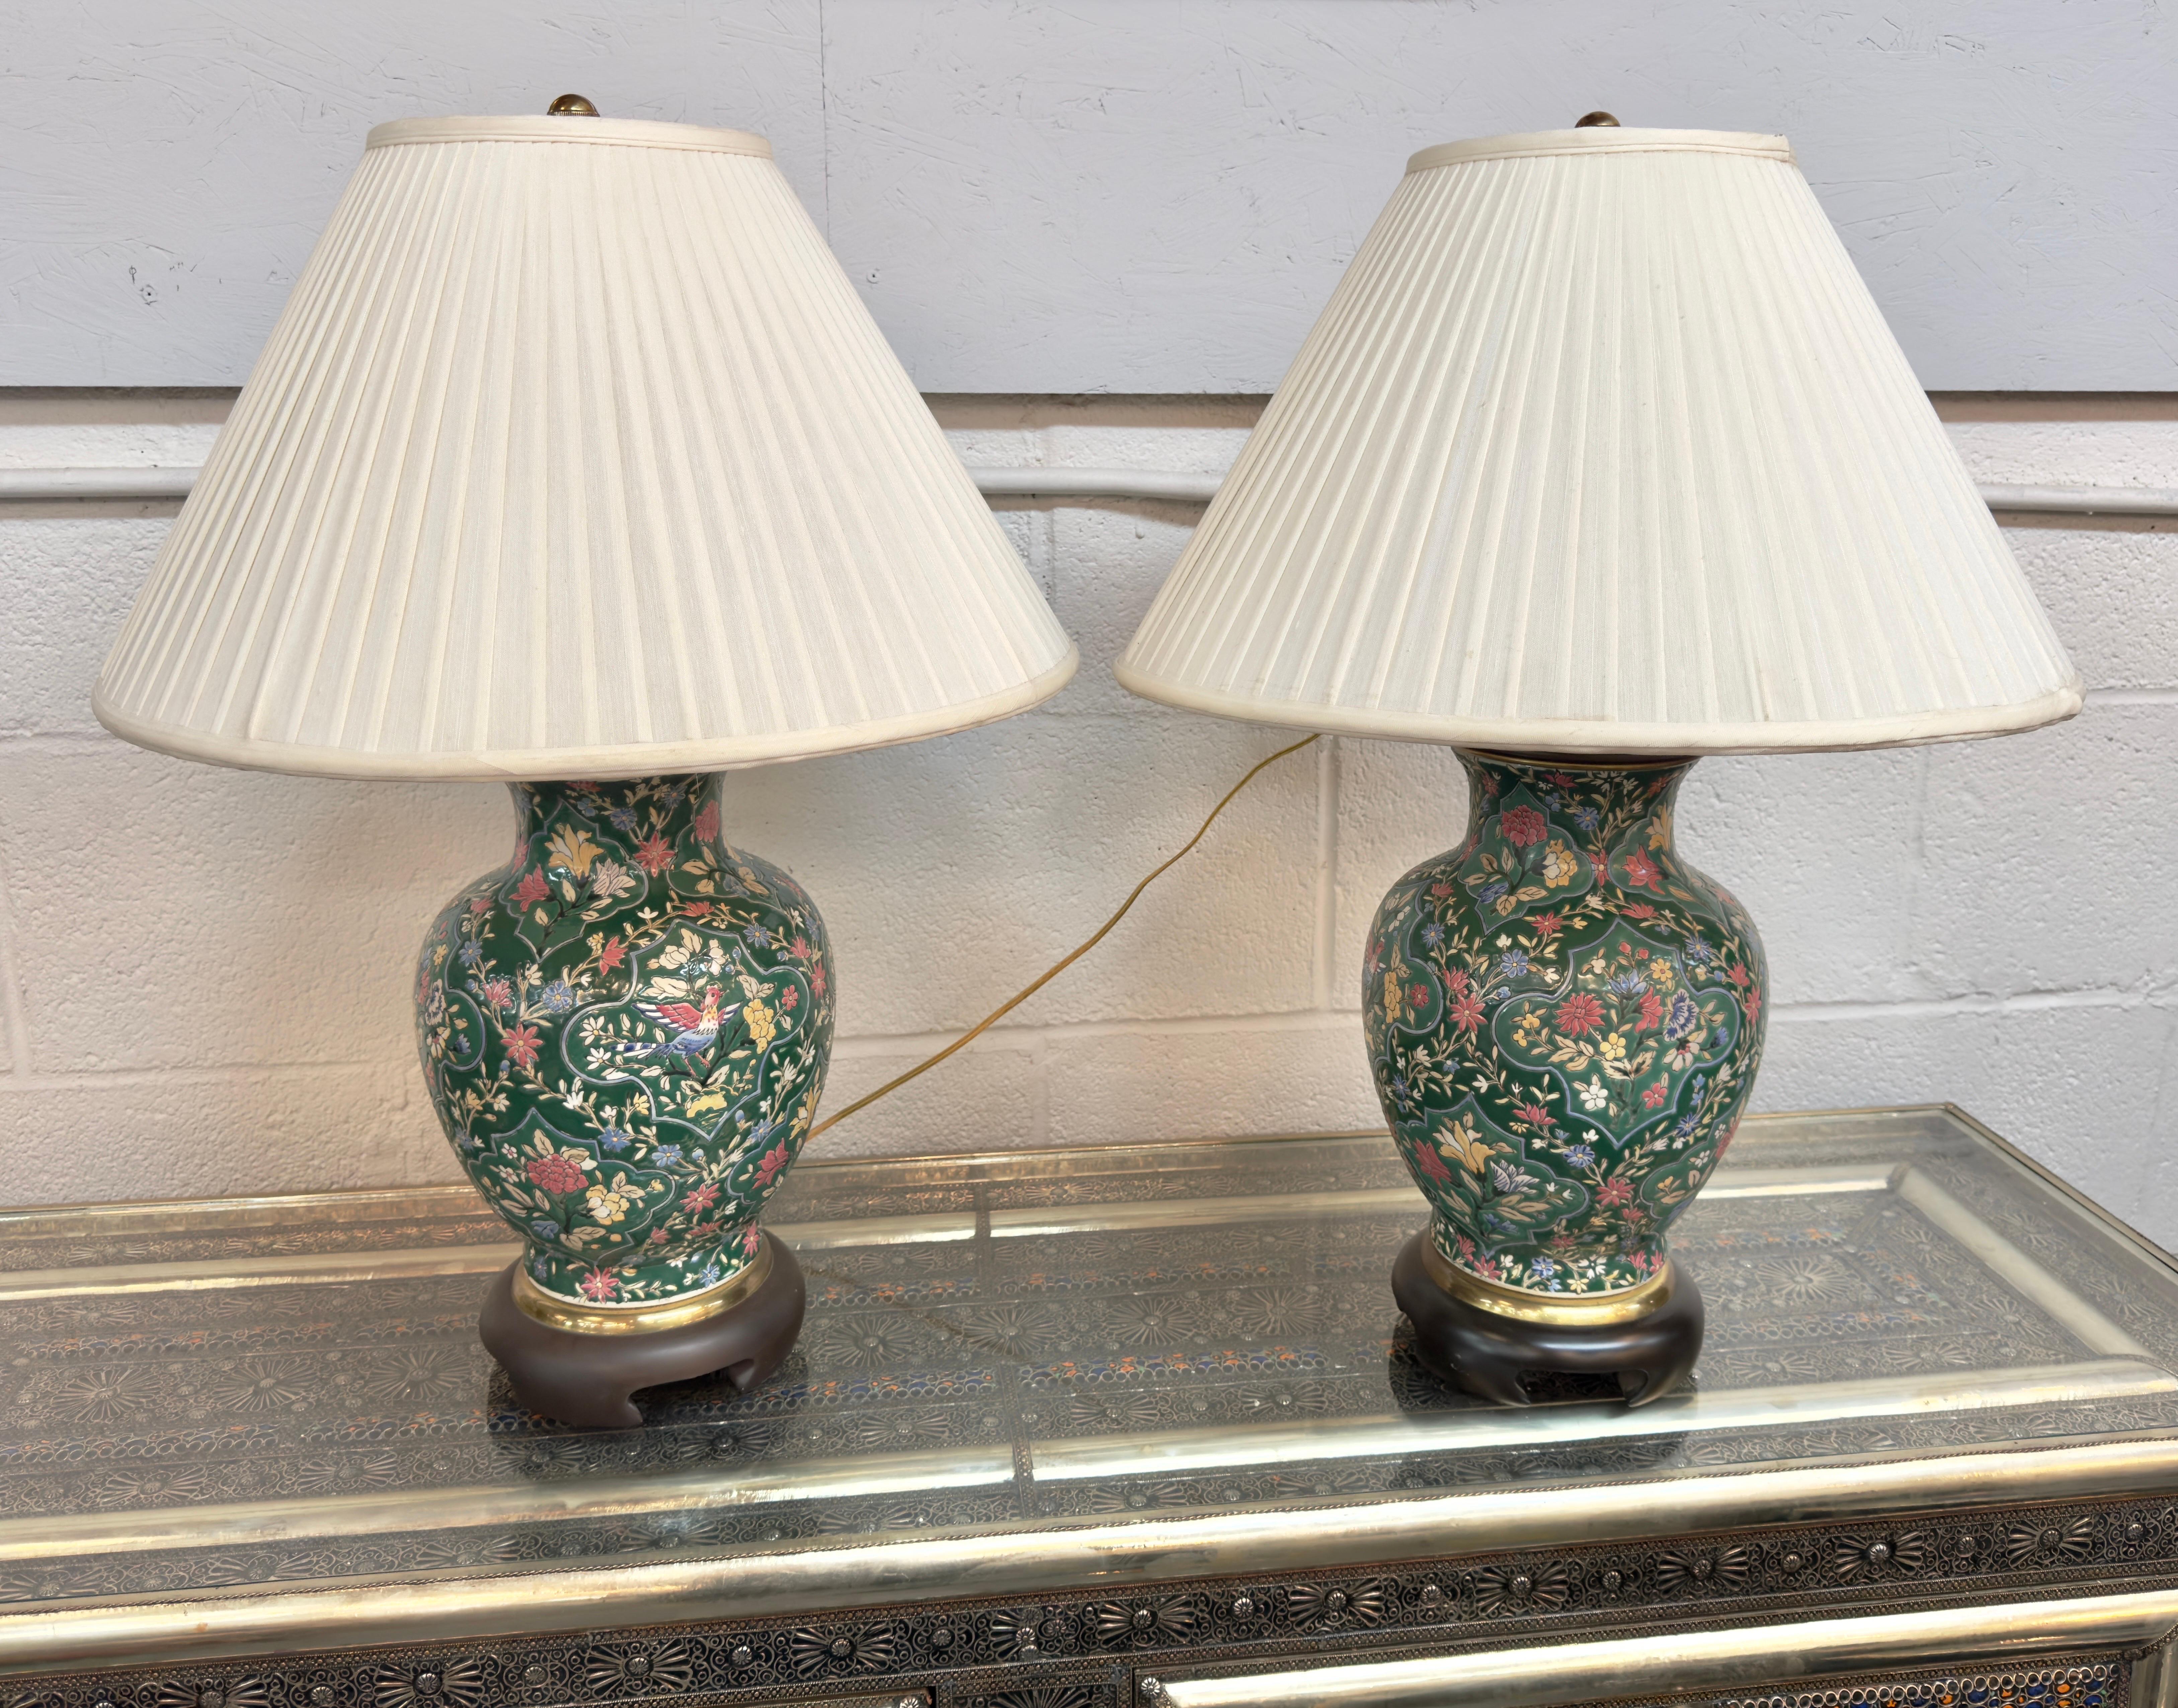 Paire de lampes de table de style Chinoiserie de Frederick Cooper. Ornée d'un motif floral captivant, chaque lampe est ornée d'un motif d'oiseau au centre et est délicatement peinte à la main sur de la porcelaine fine. Les teintes vertes